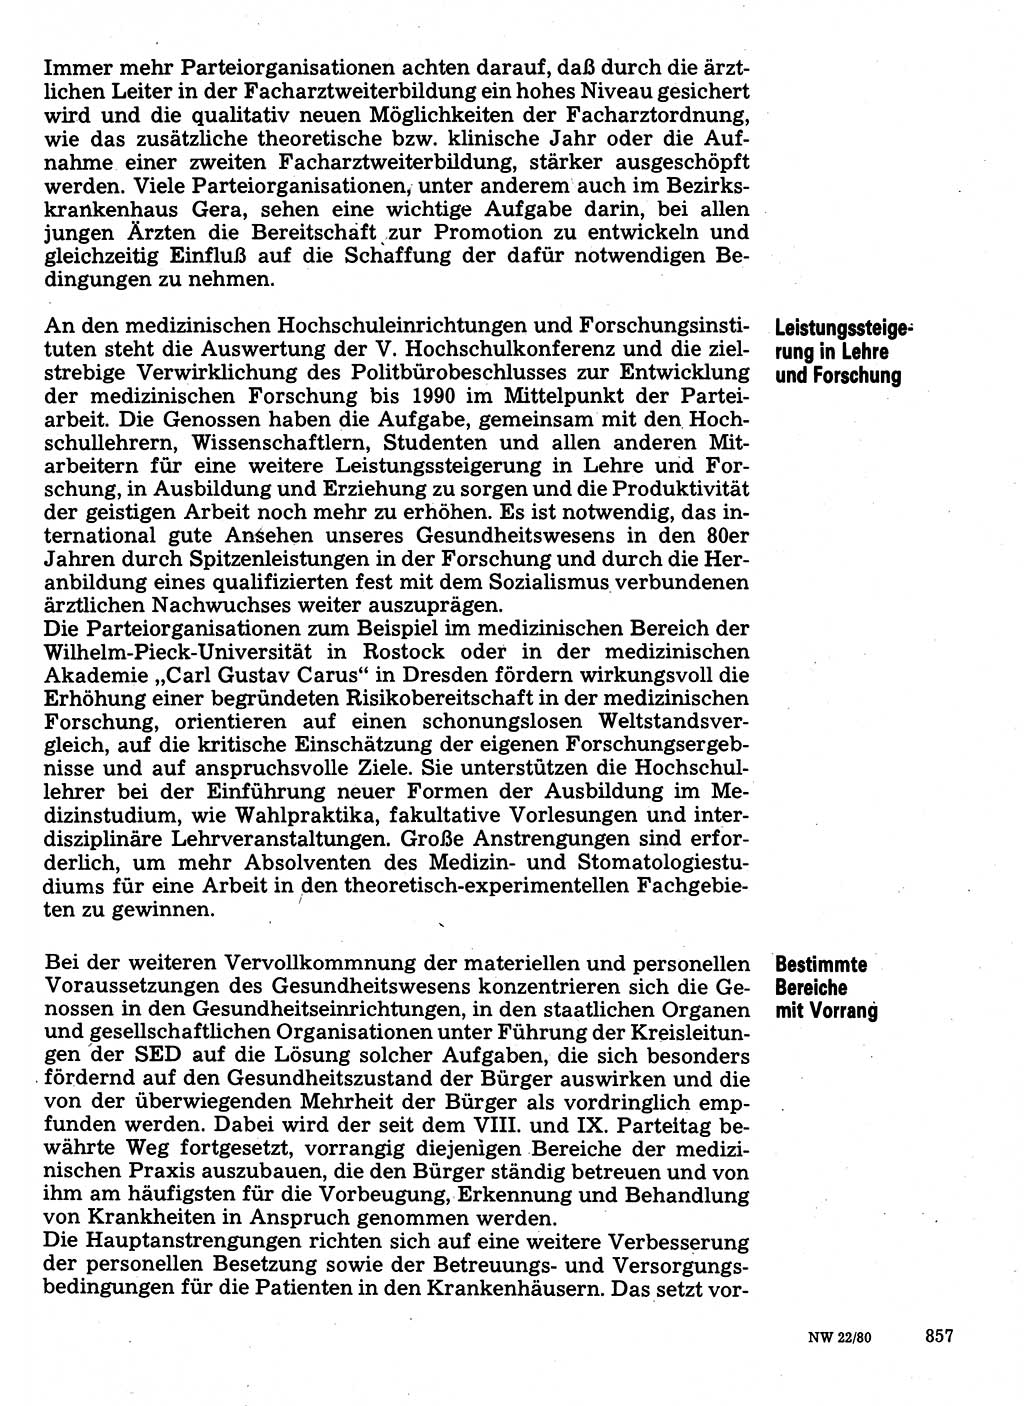 Neuer Weg (NW), Organ des Zentralkomitees (ZK) der SED (Sozialistische Einheitspartei Deutschlands) für Fragen des Parteilebens, 35. Jahrgang [Deutsche Demokratische Republik (DDR)] 1980, Seite 857 (NW ZK SED DDR 1980, S. 857)